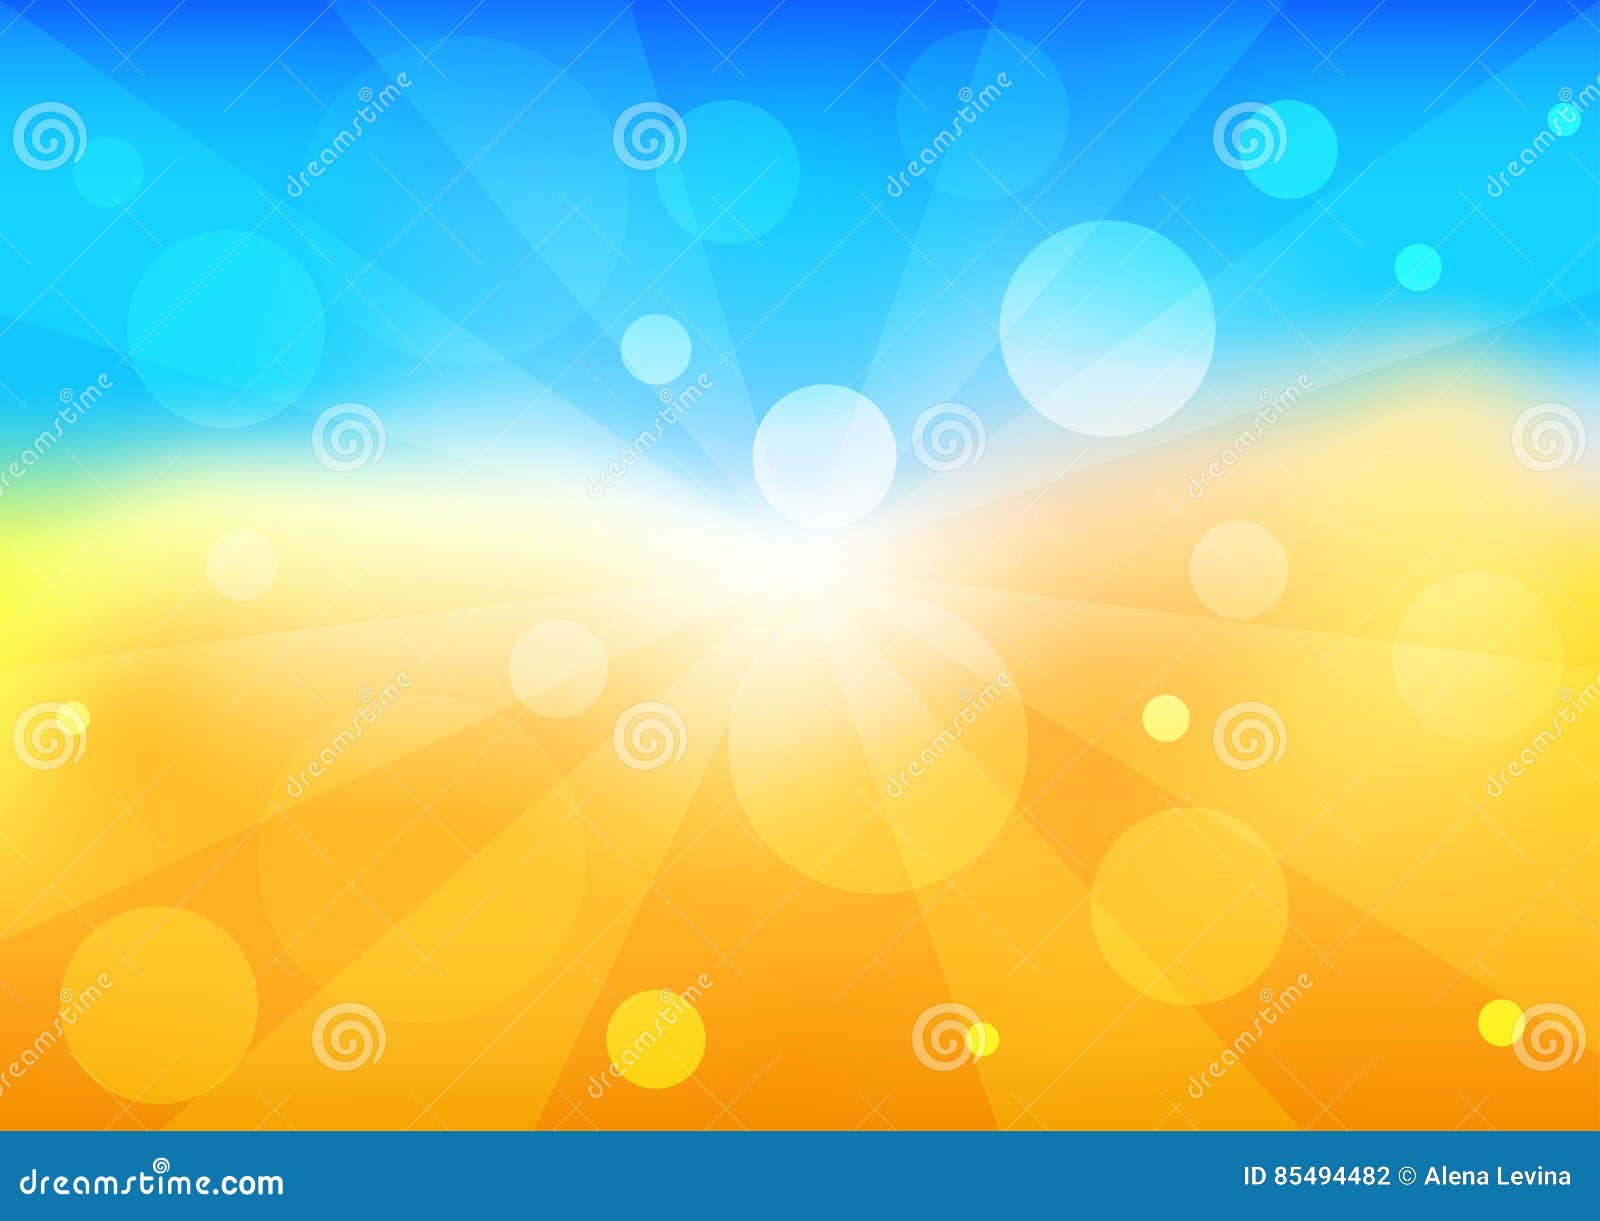 Hình nền Bright Background with the Blue Sky and Yellow Sun mang đến cho bạn một phong cảnh mùa hè tươi tắn và tràn đầy sinh lực. Hãy xem hình ảnh liên quan để được chiêm ngưỡng một bầu trời xanh trong vắt và mặt trời vàng rực rỡ trên nền cỏ xanh mơn mởn.